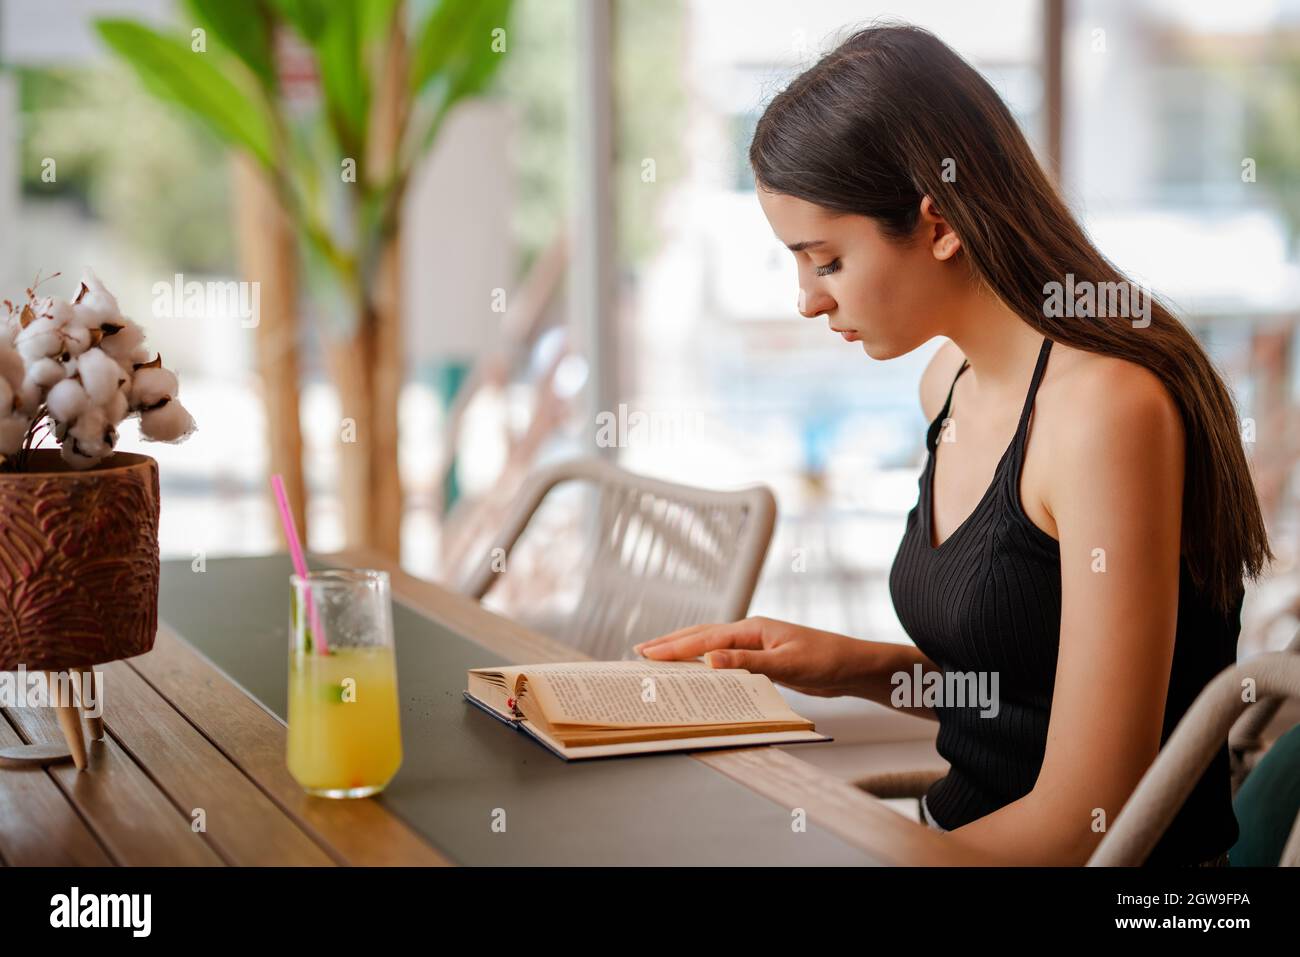 Junge hübsche Frau sitzt und trinkt eine Glaslimonade, während sie ein Buch liest. Hochwertige Fotos Stockfoto